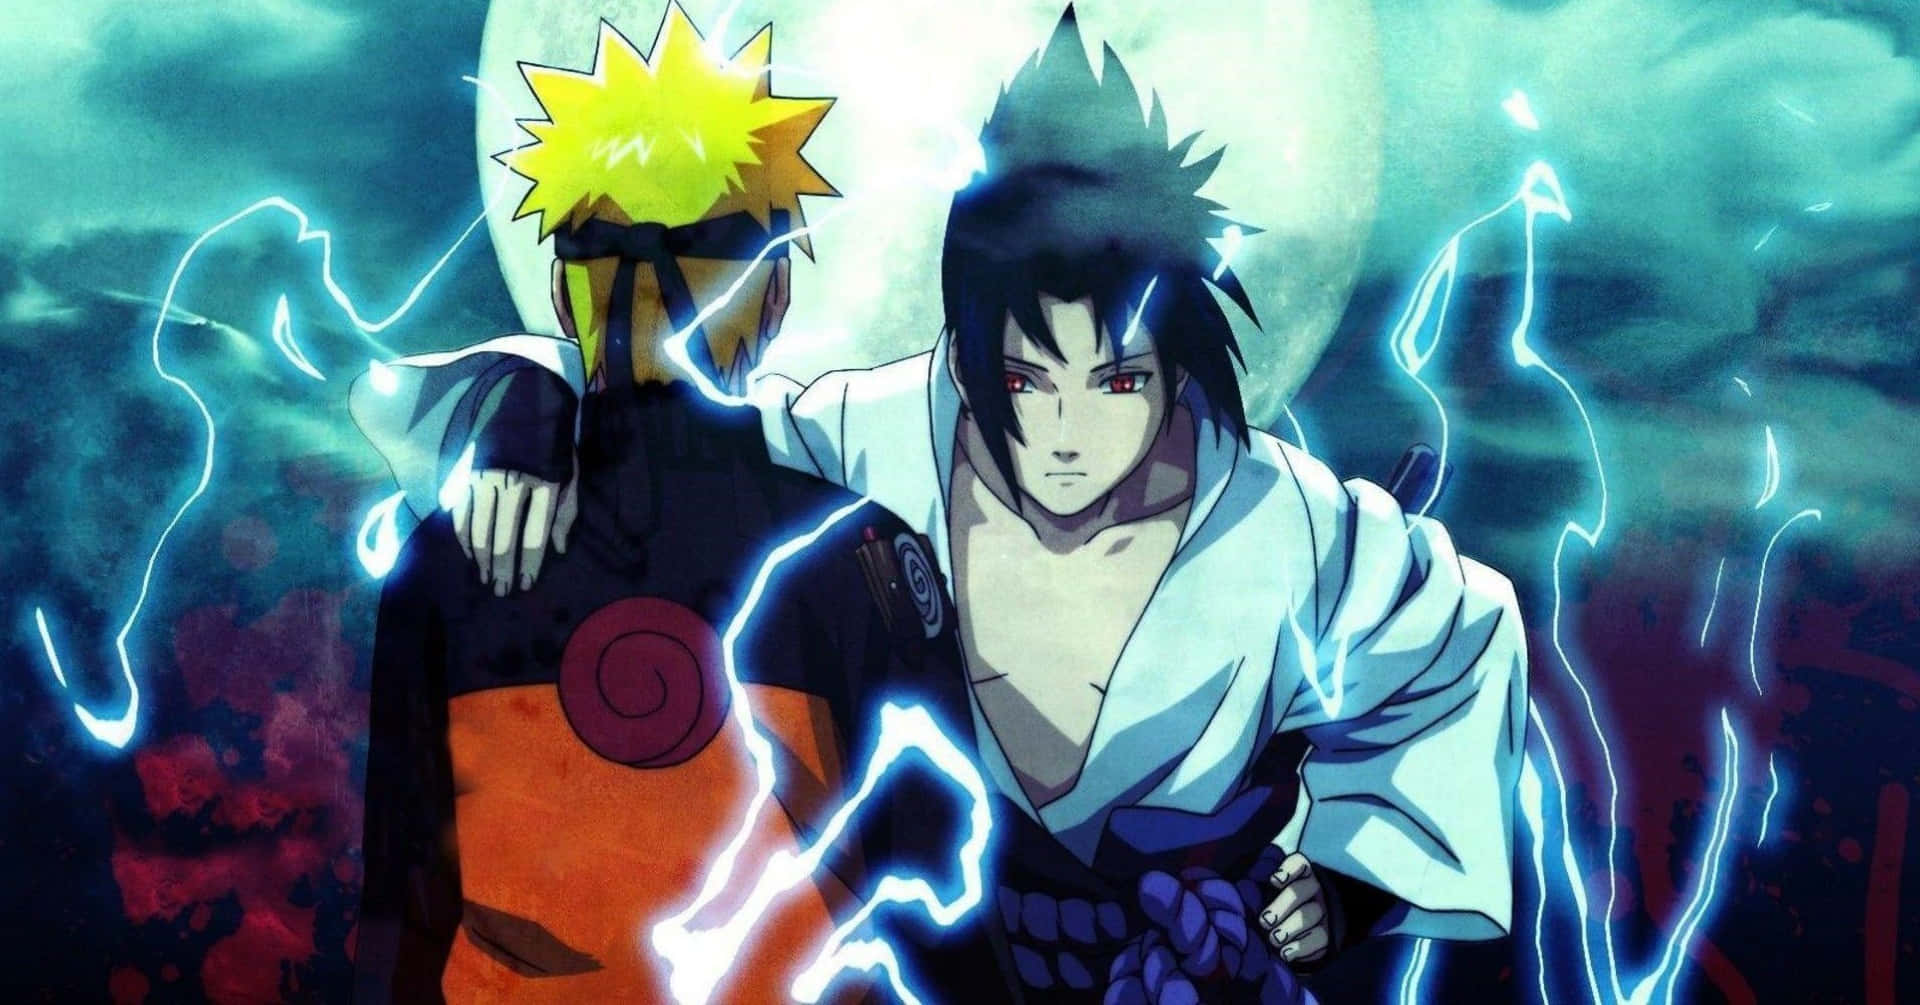 Personaggidi Naruto Anime E Video Gioco Per Ps4. Sfondo